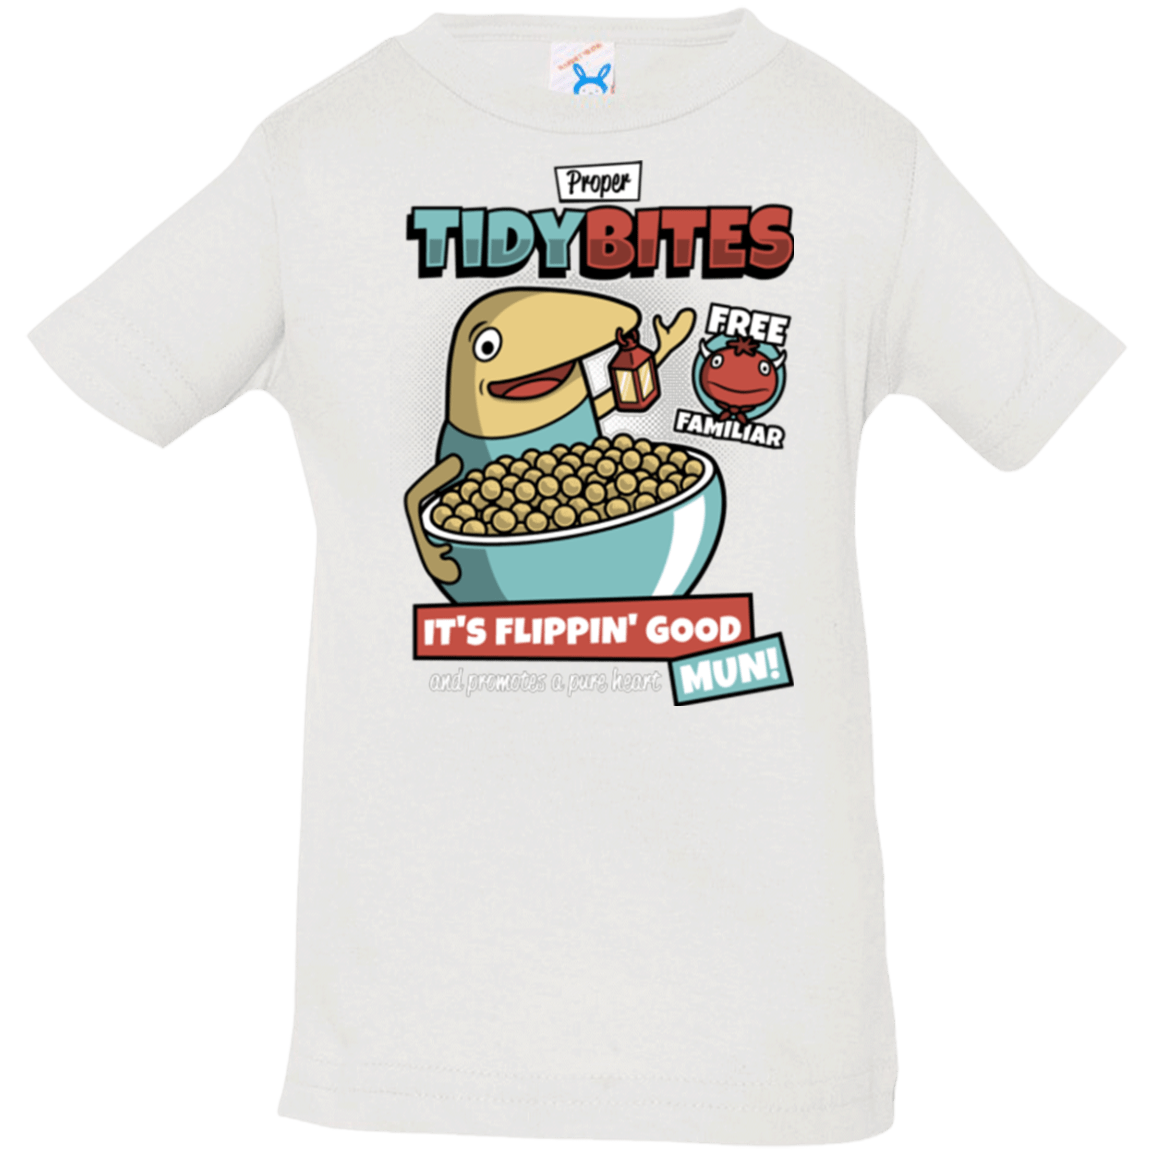 T-Shirts White / 6 Months PROPER TIDY BITES Infant Premium T-Shirt